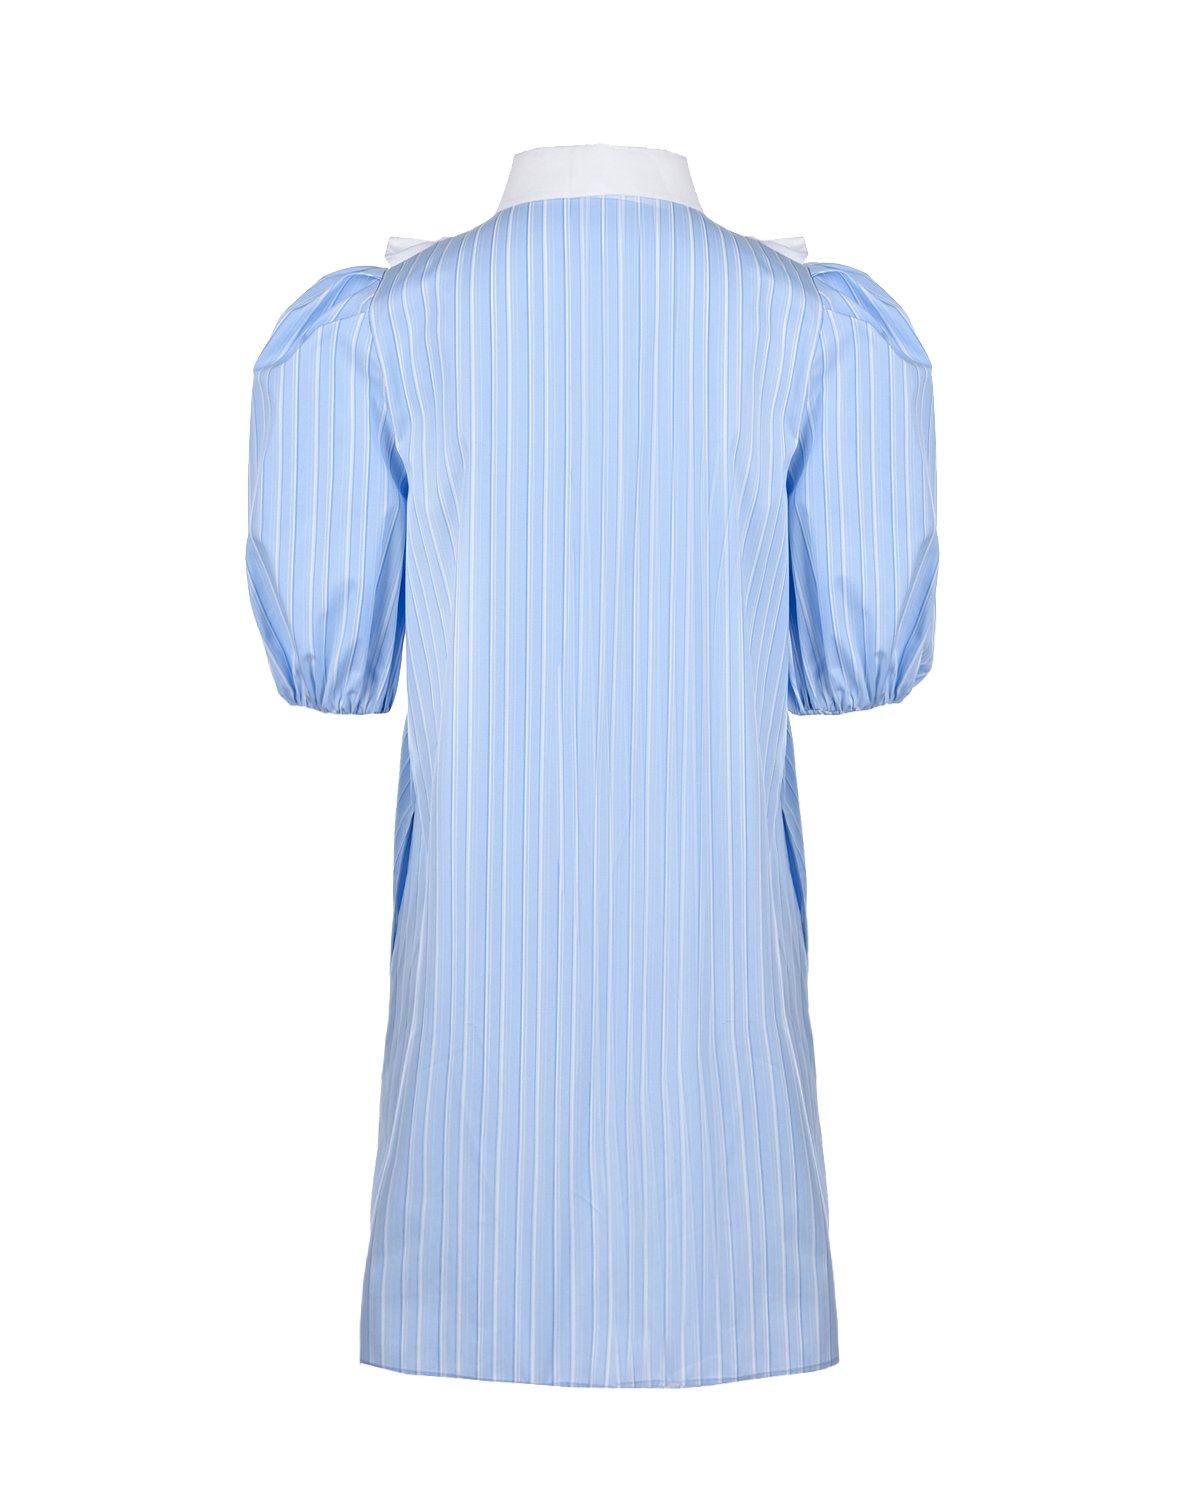 Голубое платье с белым воротником Vivetta, размер 40, цвет голубой - фото 2